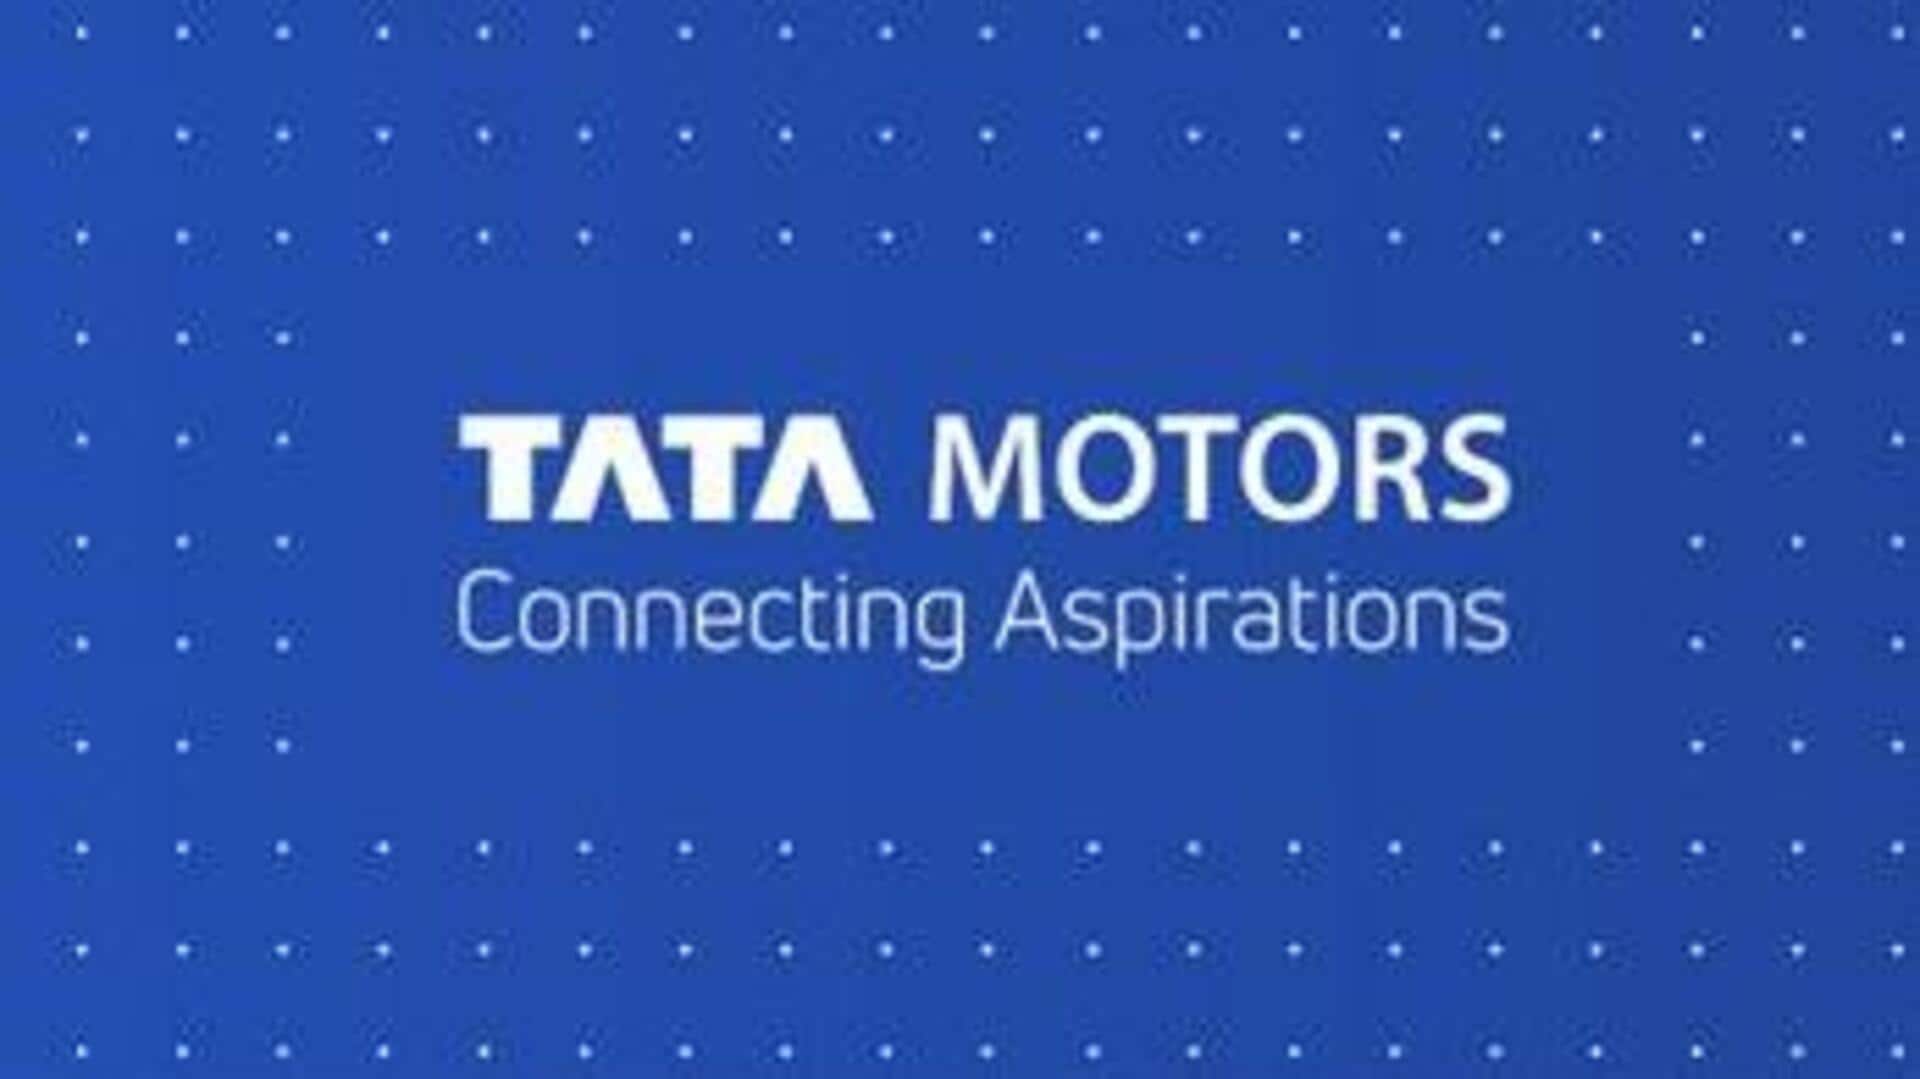 टाटा मोटर्स का पहला एक्सक्लूसिव EV शोरूम यहां खुलने की उम्मीद, जानिये योजना